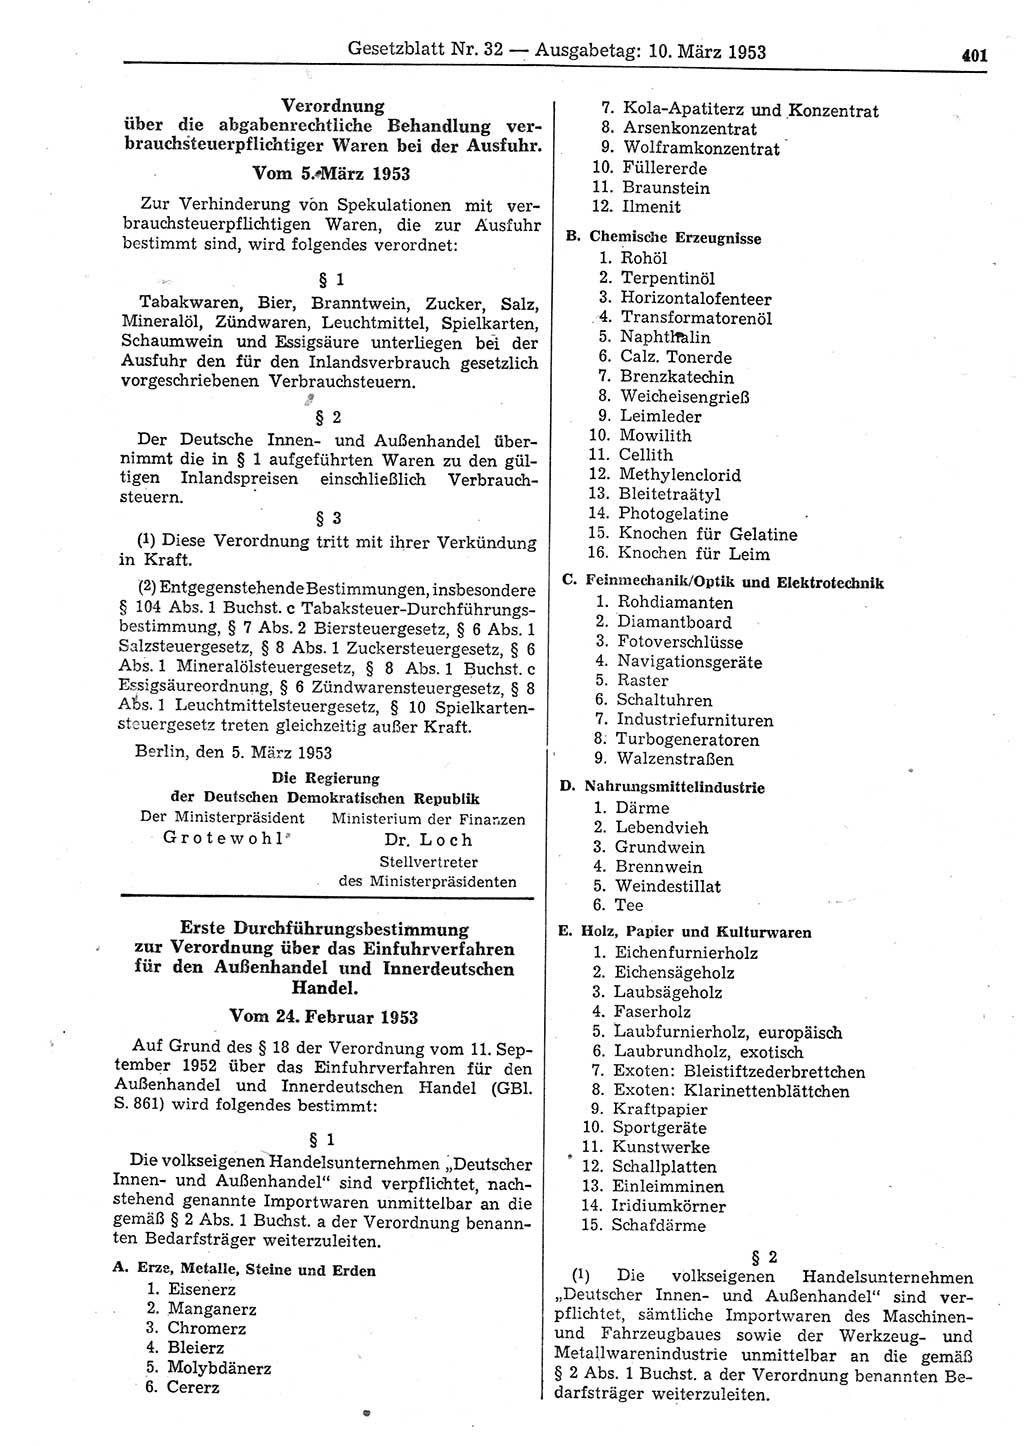 Gesetzblatt (GBl.) der Deutschen Demokratischen Republik (DDR) 1953, Seite 401 (GBl. DDR 1953, S. 401)